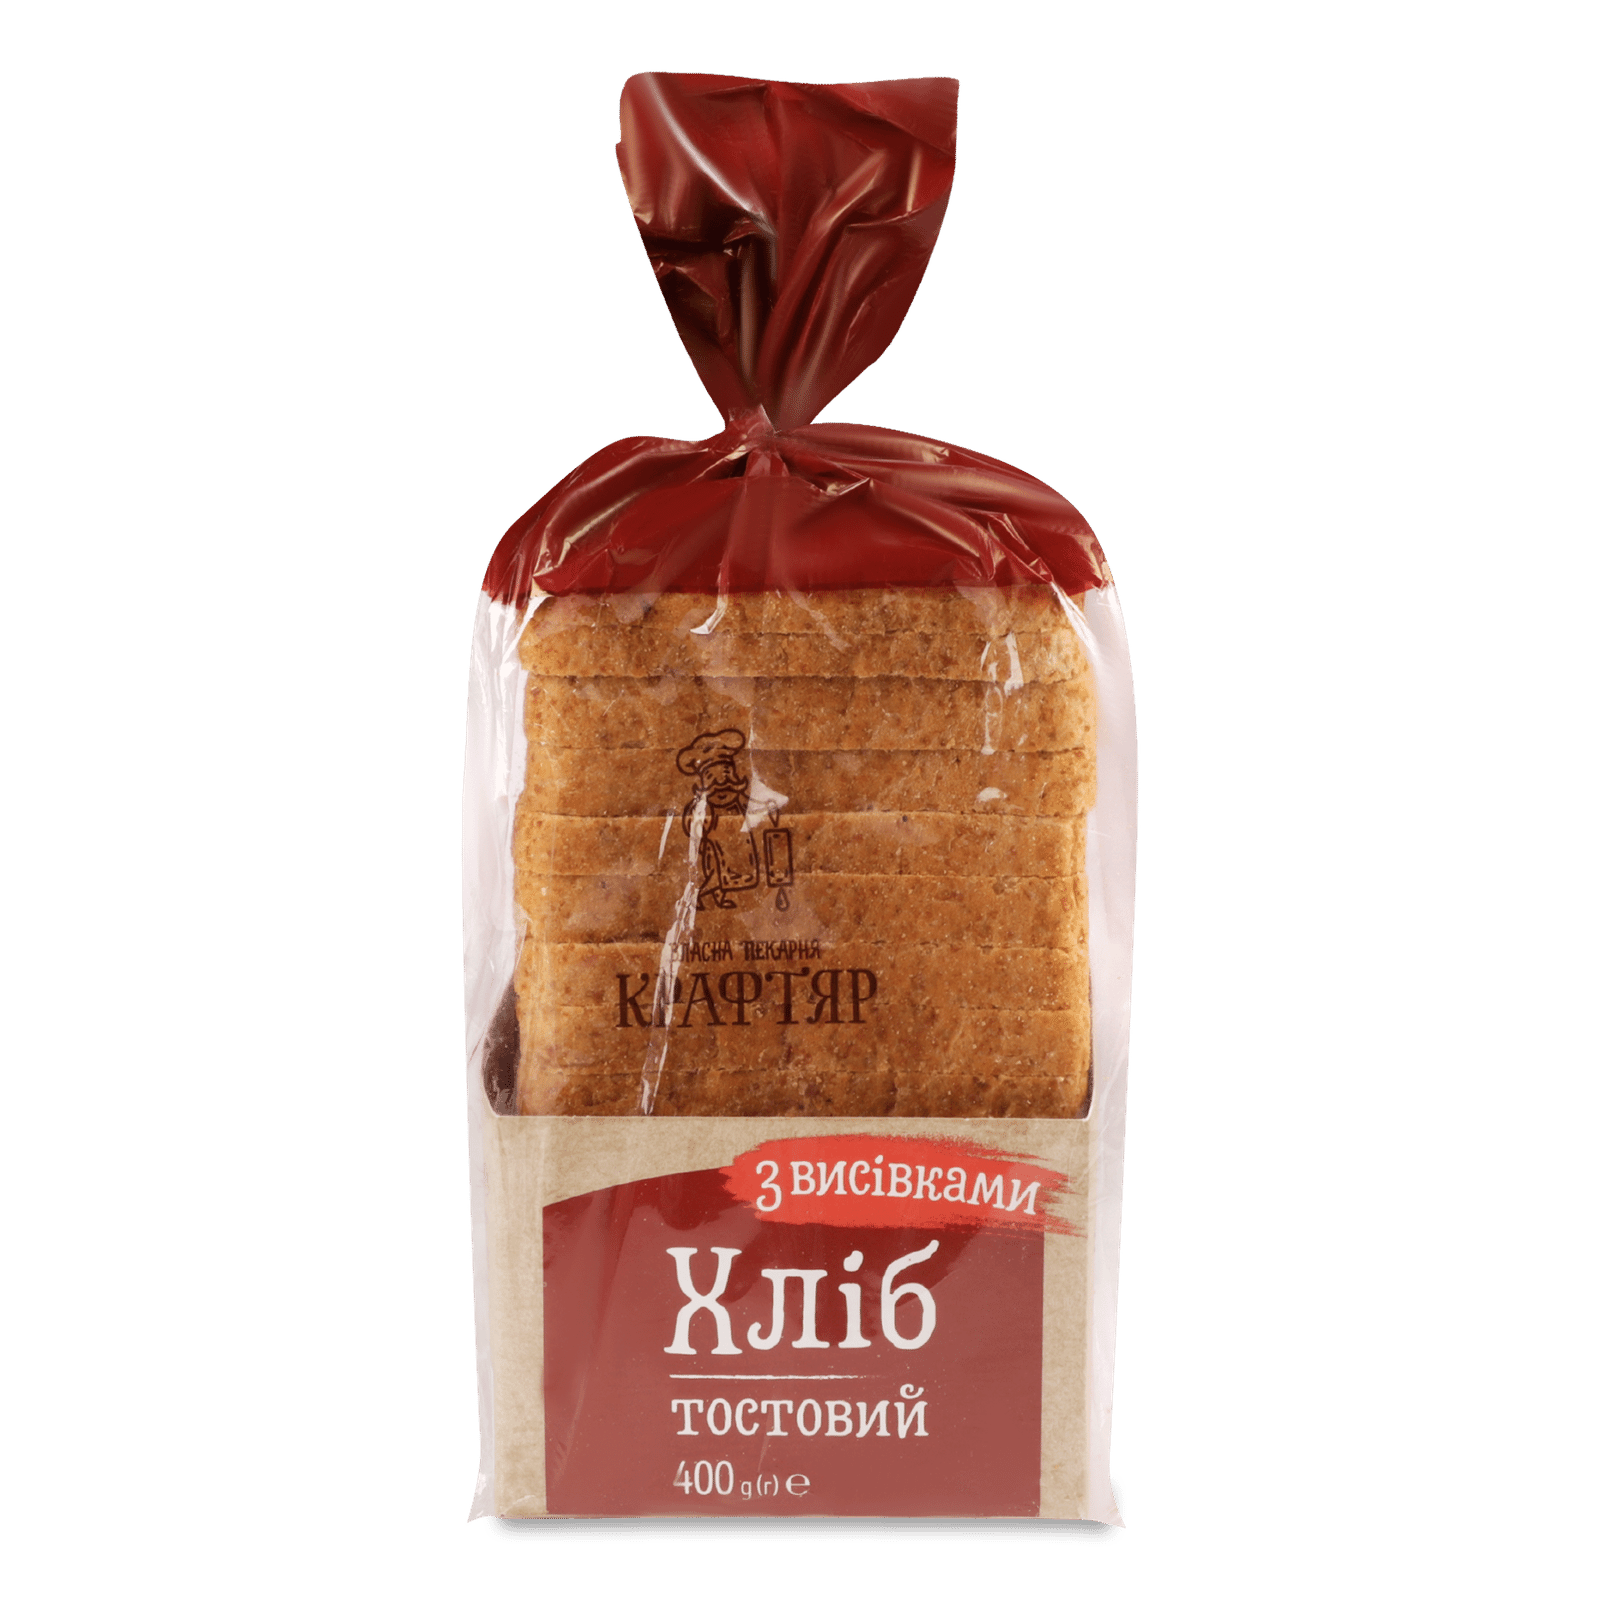 Хліб Крафтяр тостовий висівковий - 1